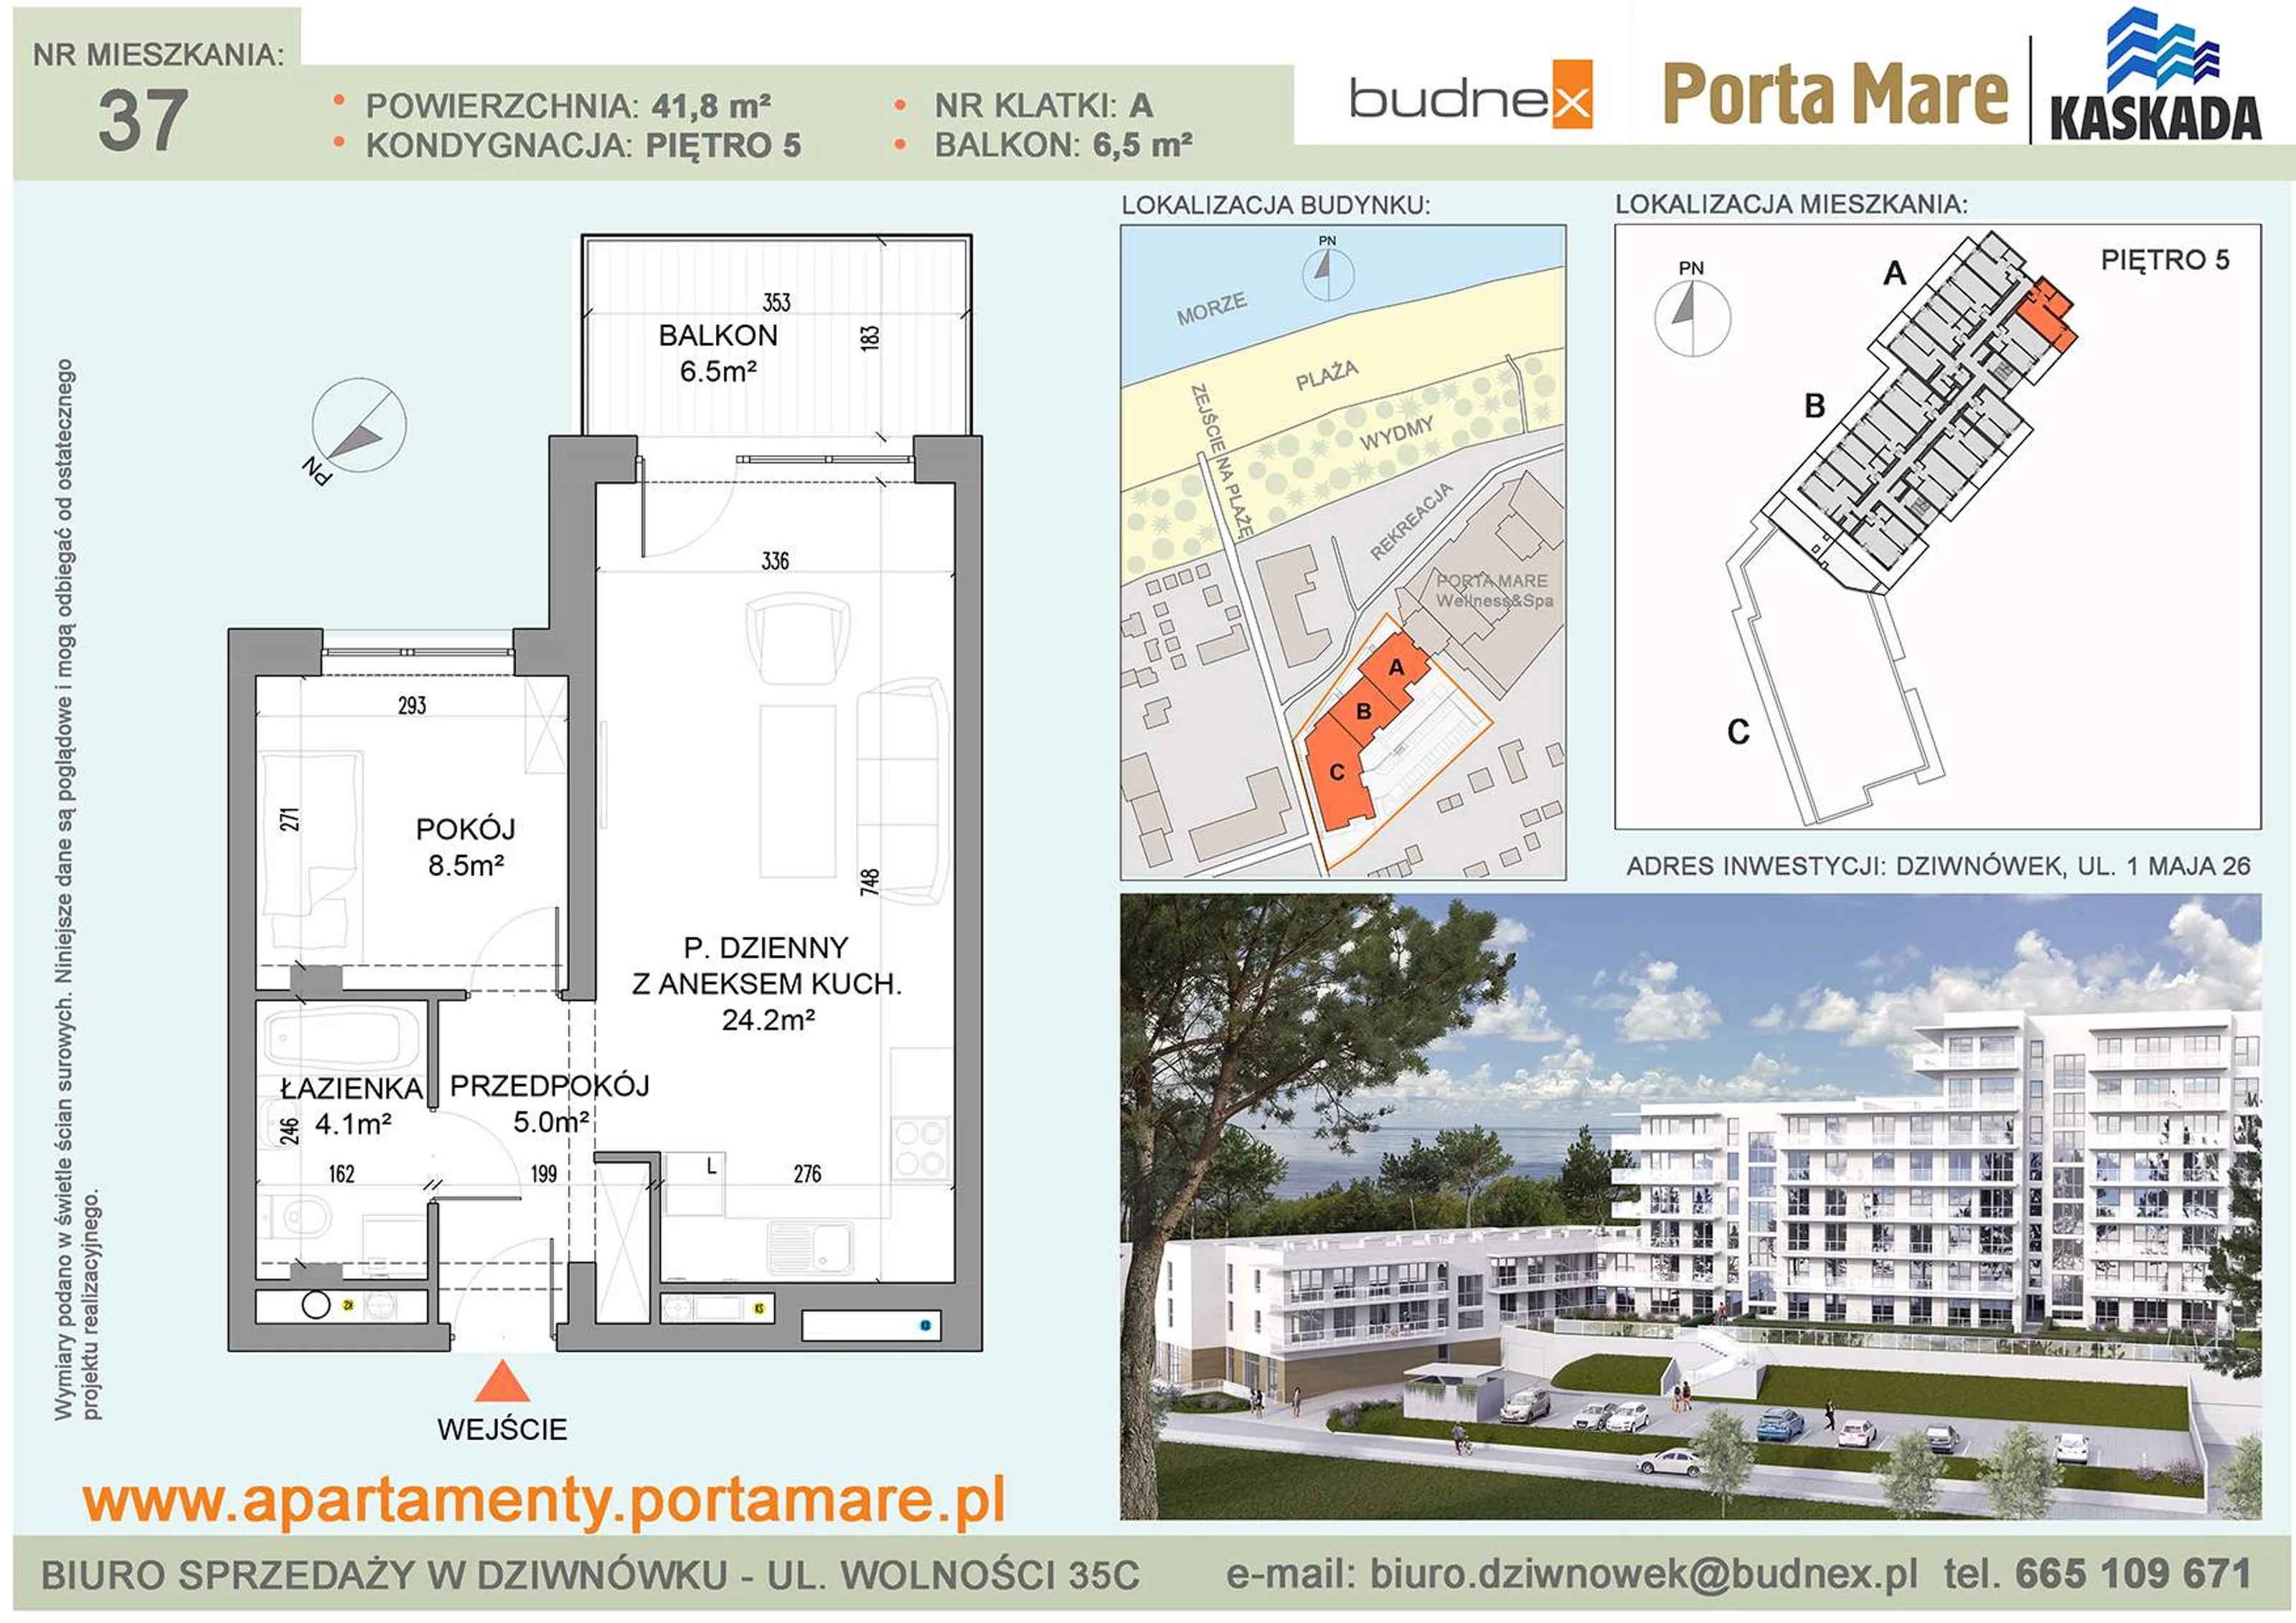 Apartament 41,80 m², piętro 5, oferta nr A/M37, Porta Mare Kaskada, Dziwnówek, ul. 1 Maja 26